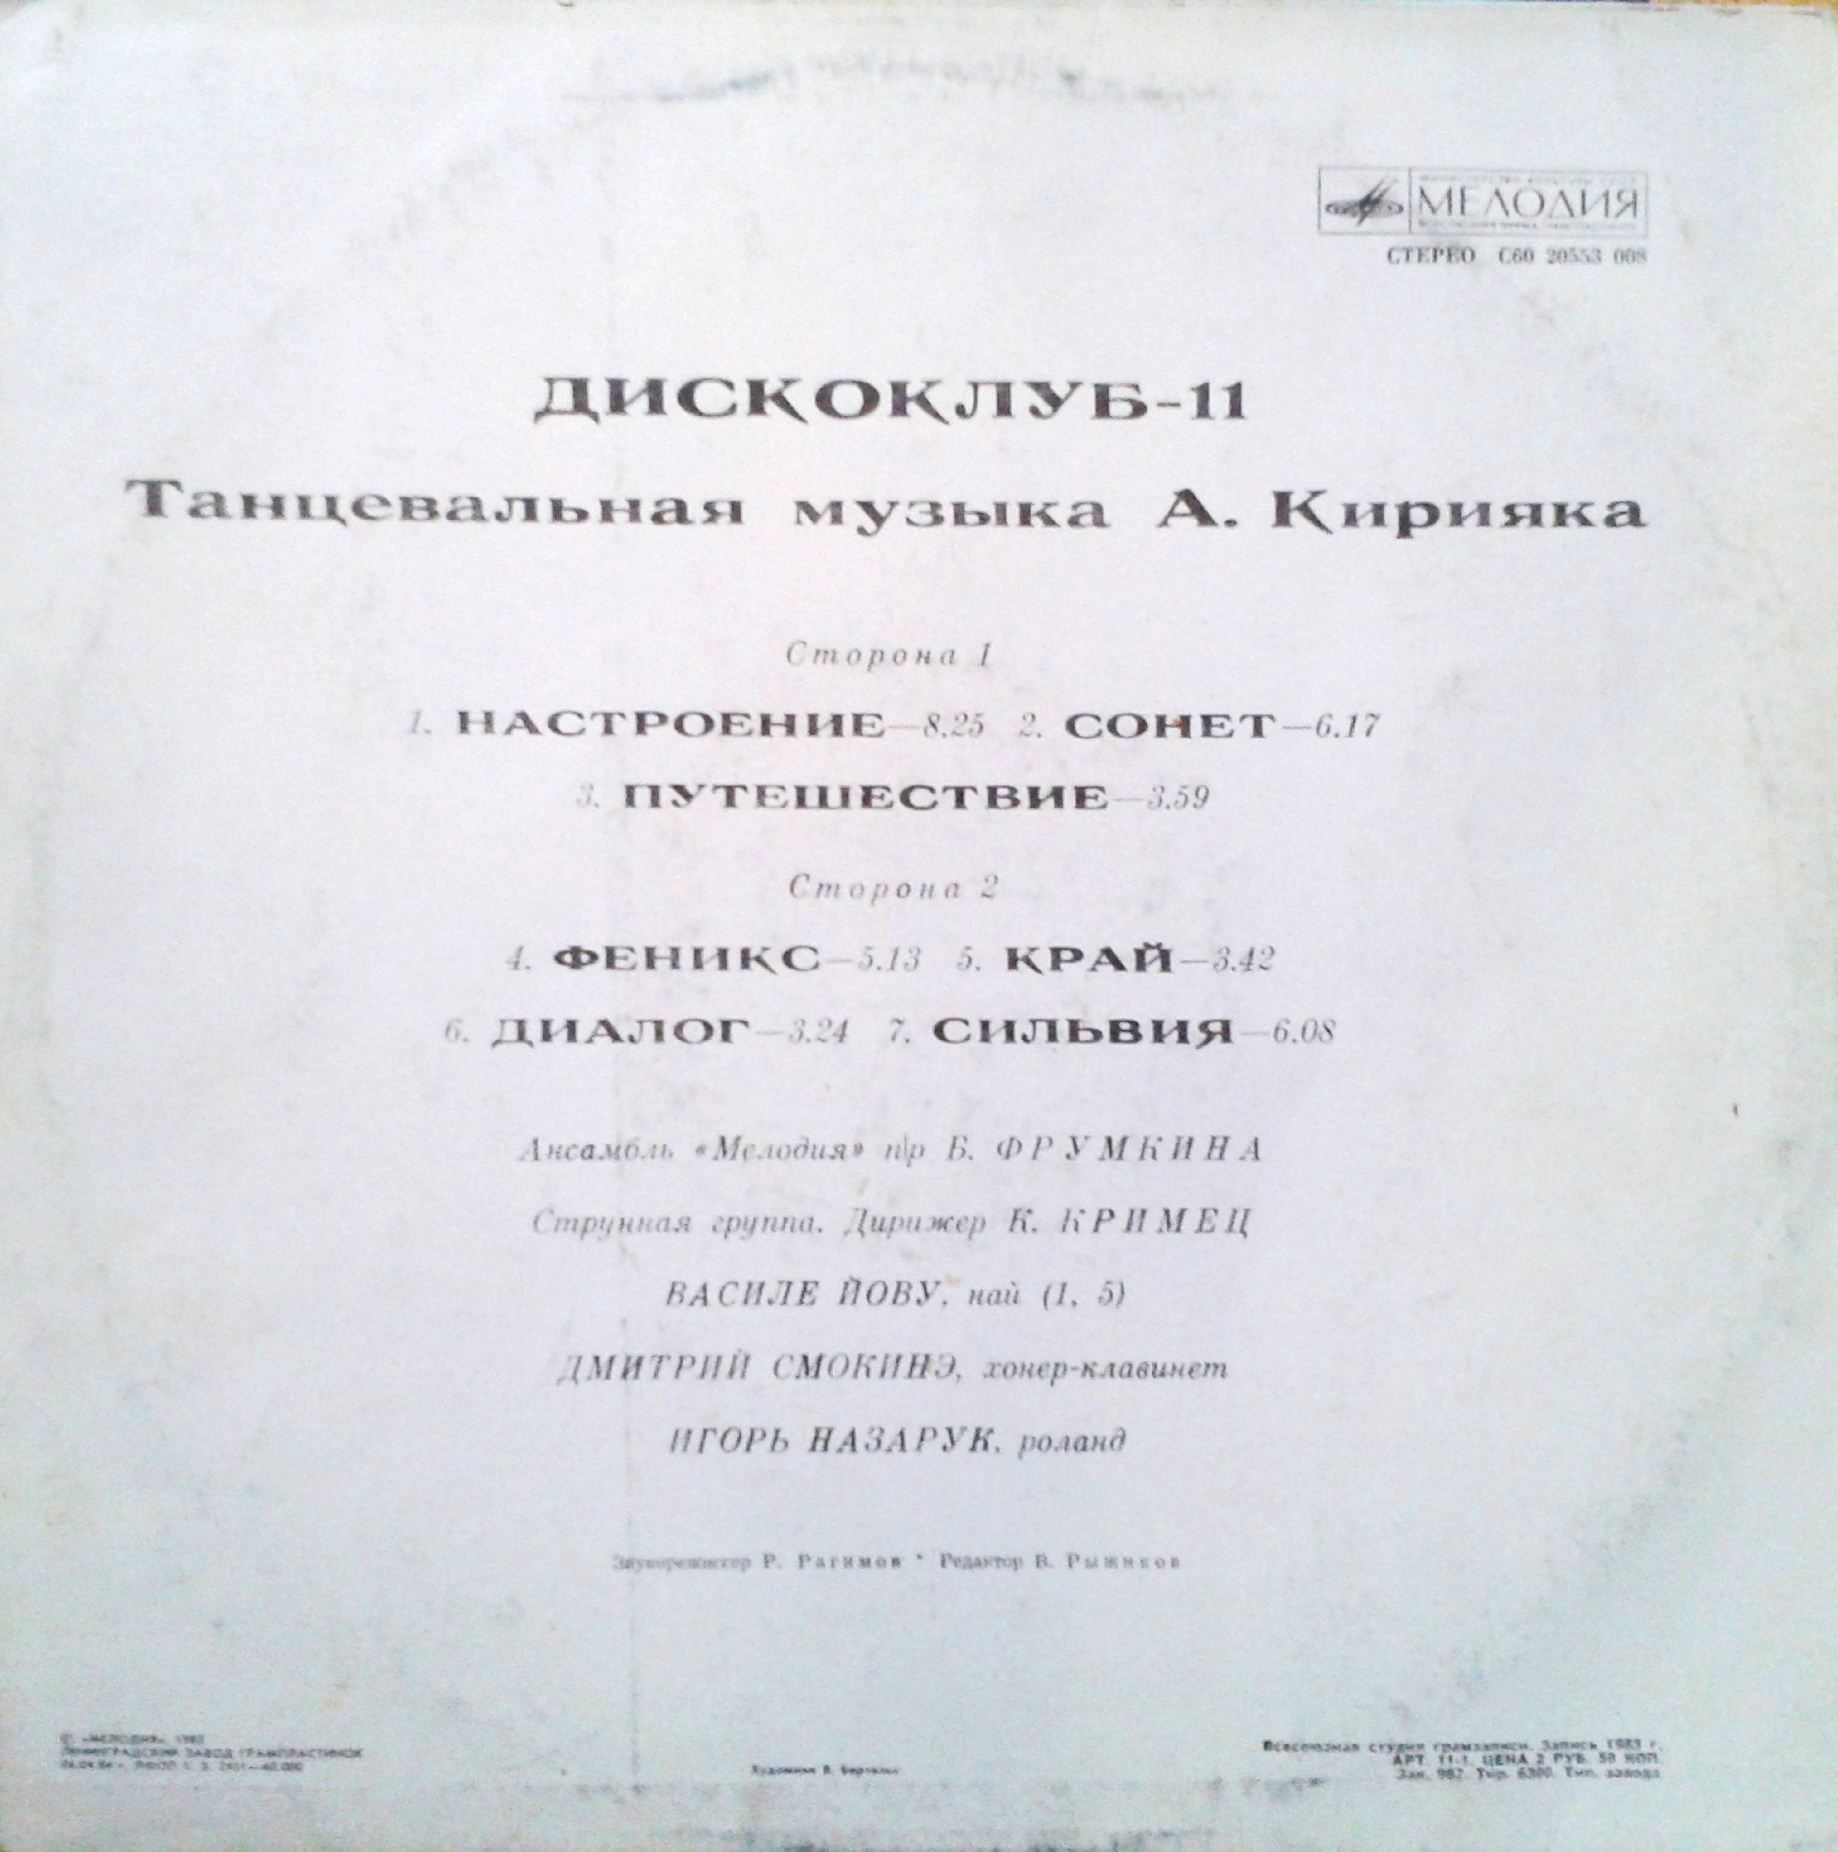 ДИСКОКЛУБ-11 - Танцевальная музыка Анатолия Кирияка. Популярные ансамбли и солисты